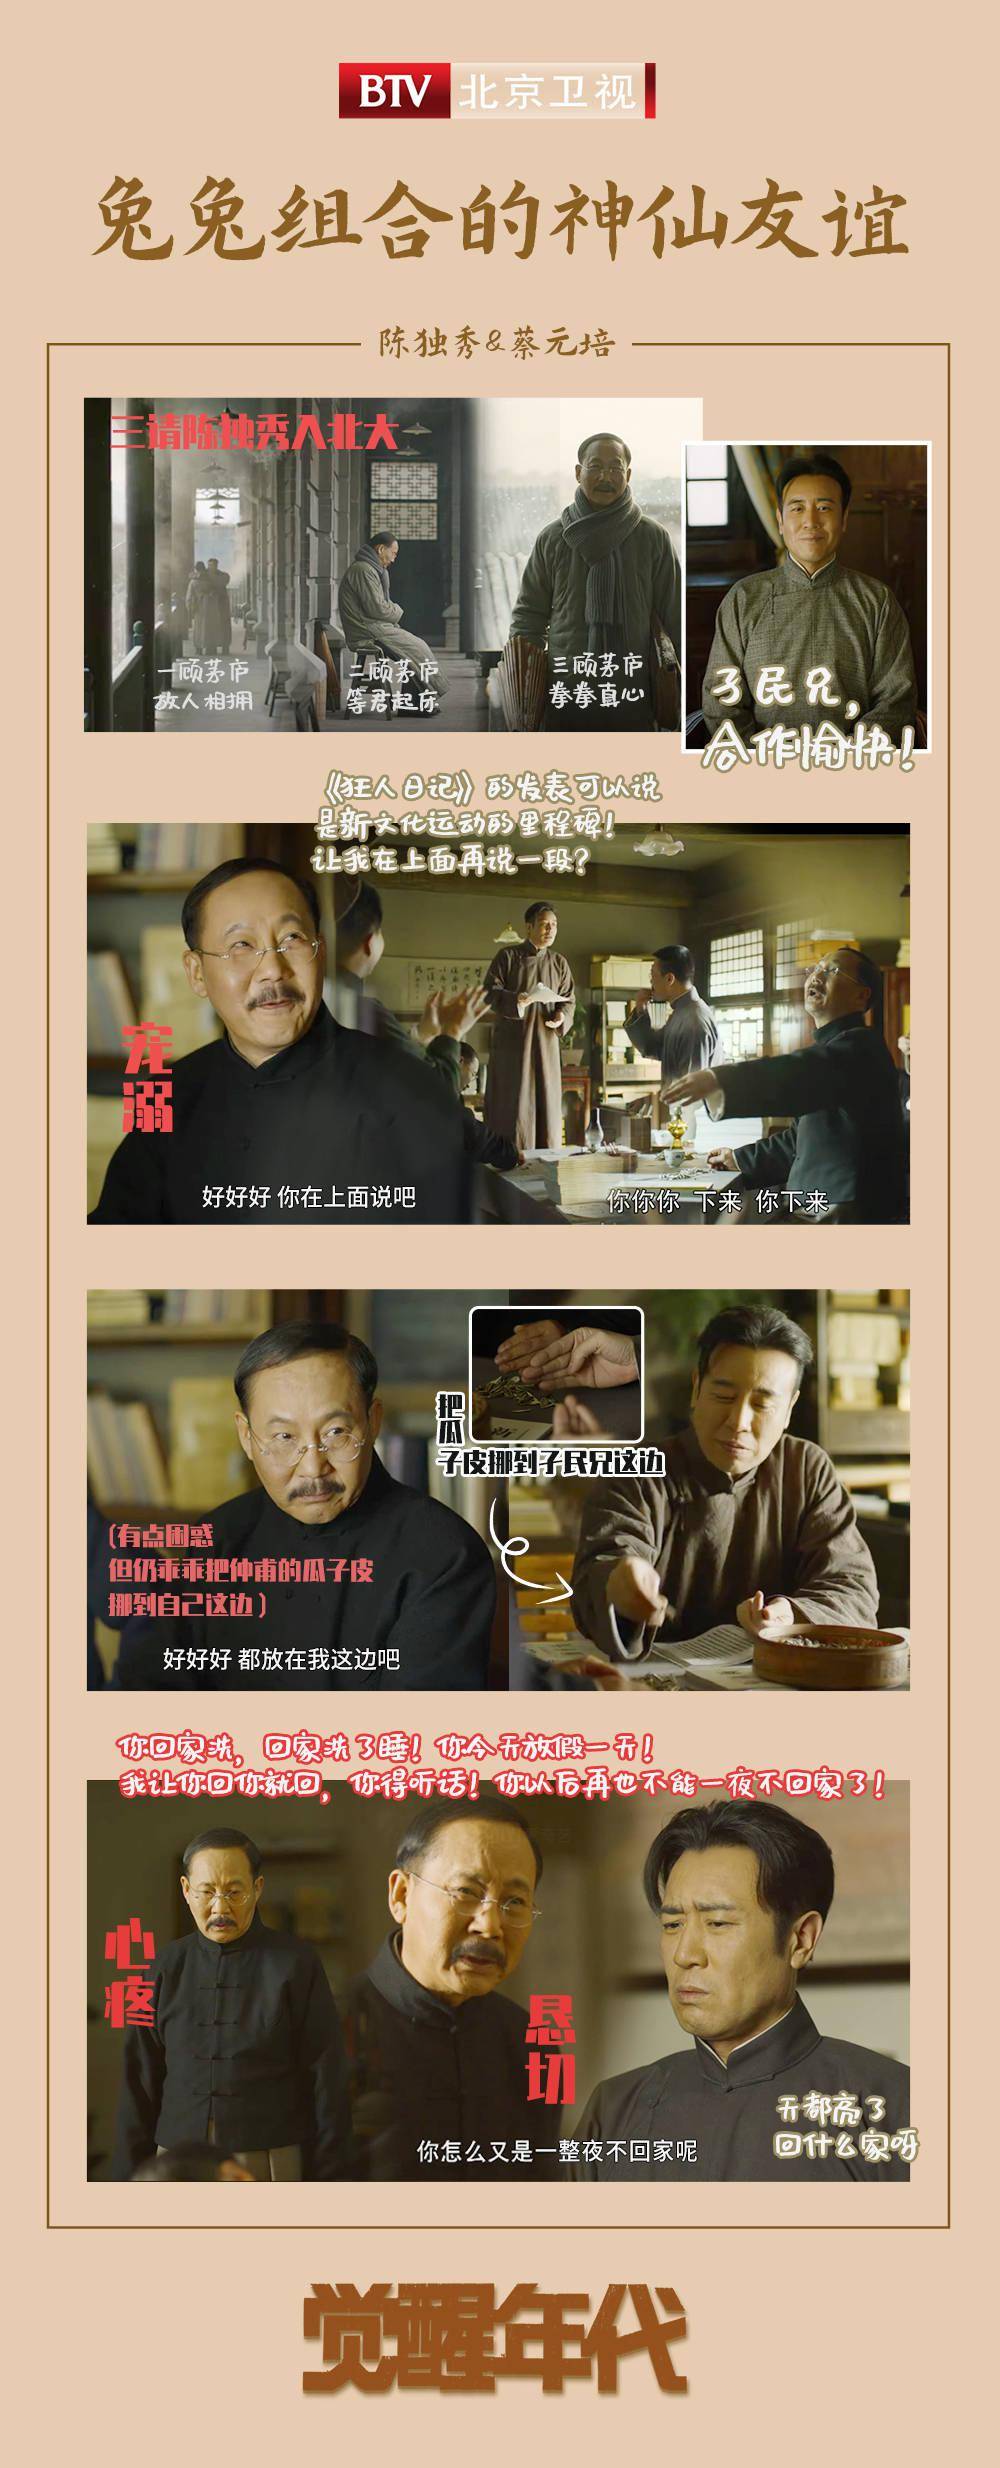 北京卫视《觉醒年代》陈独秀与蔡元培的神仙友谊